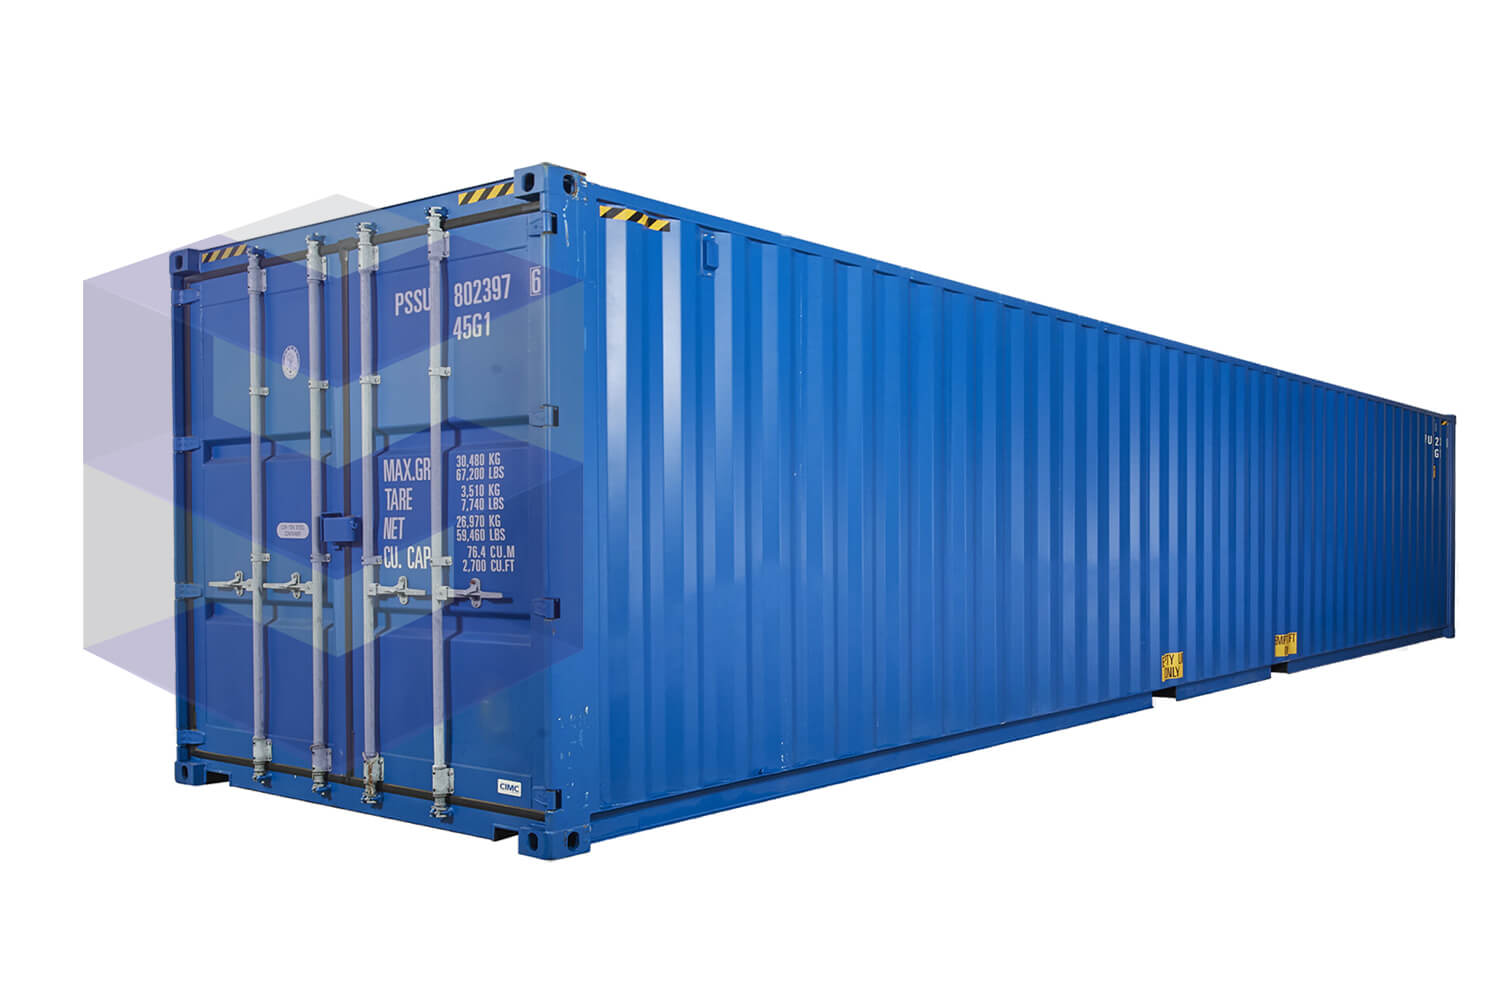 Купить морской контейнер б у в спб. Морской контейнер 40 футов High Cube. Контейнер 80 футов. Морской контейнер 4300. Колеса на морской контейнер 40 футовый.